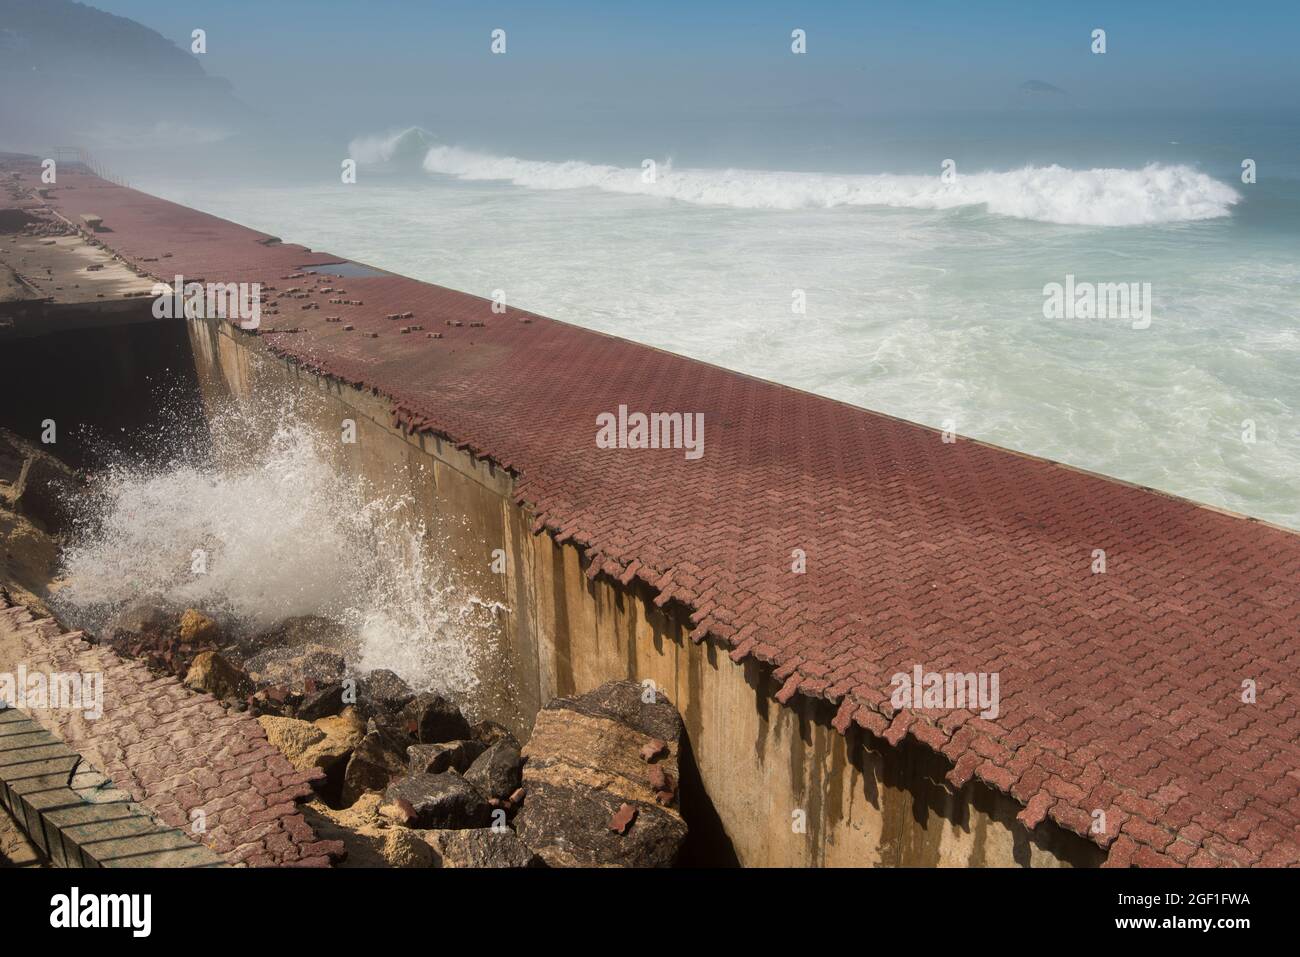 Promenade of Sao Conrado in Rio de Janeiro is Ruined by Strong Ocean Waves Stock Photo